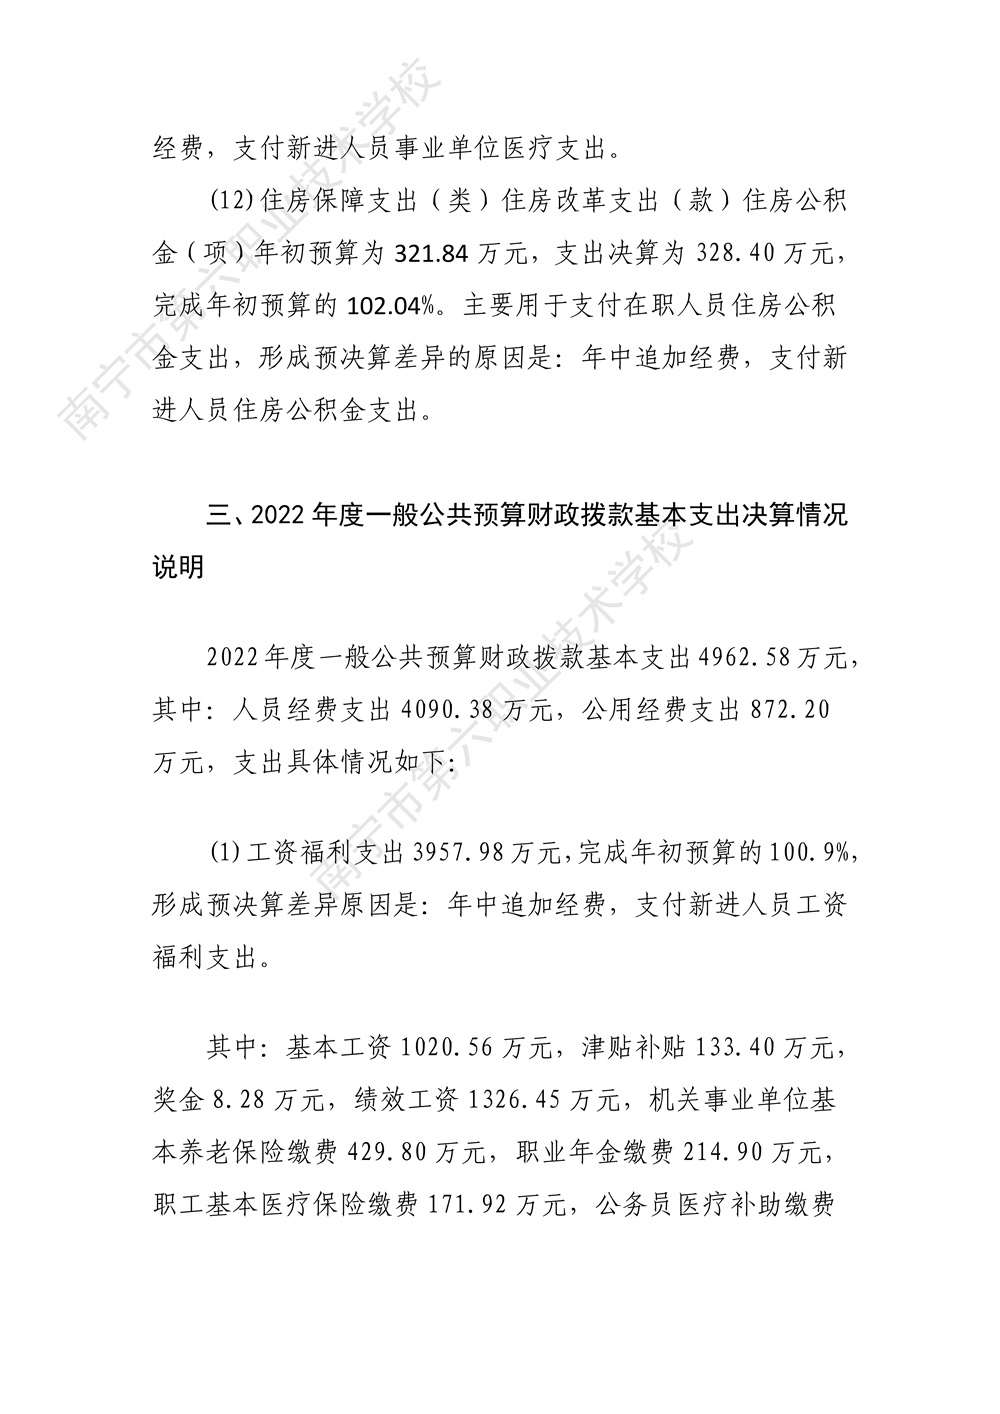 南宁市第六职业技术学校2022年度部门决算公开（终版）_30.jpg